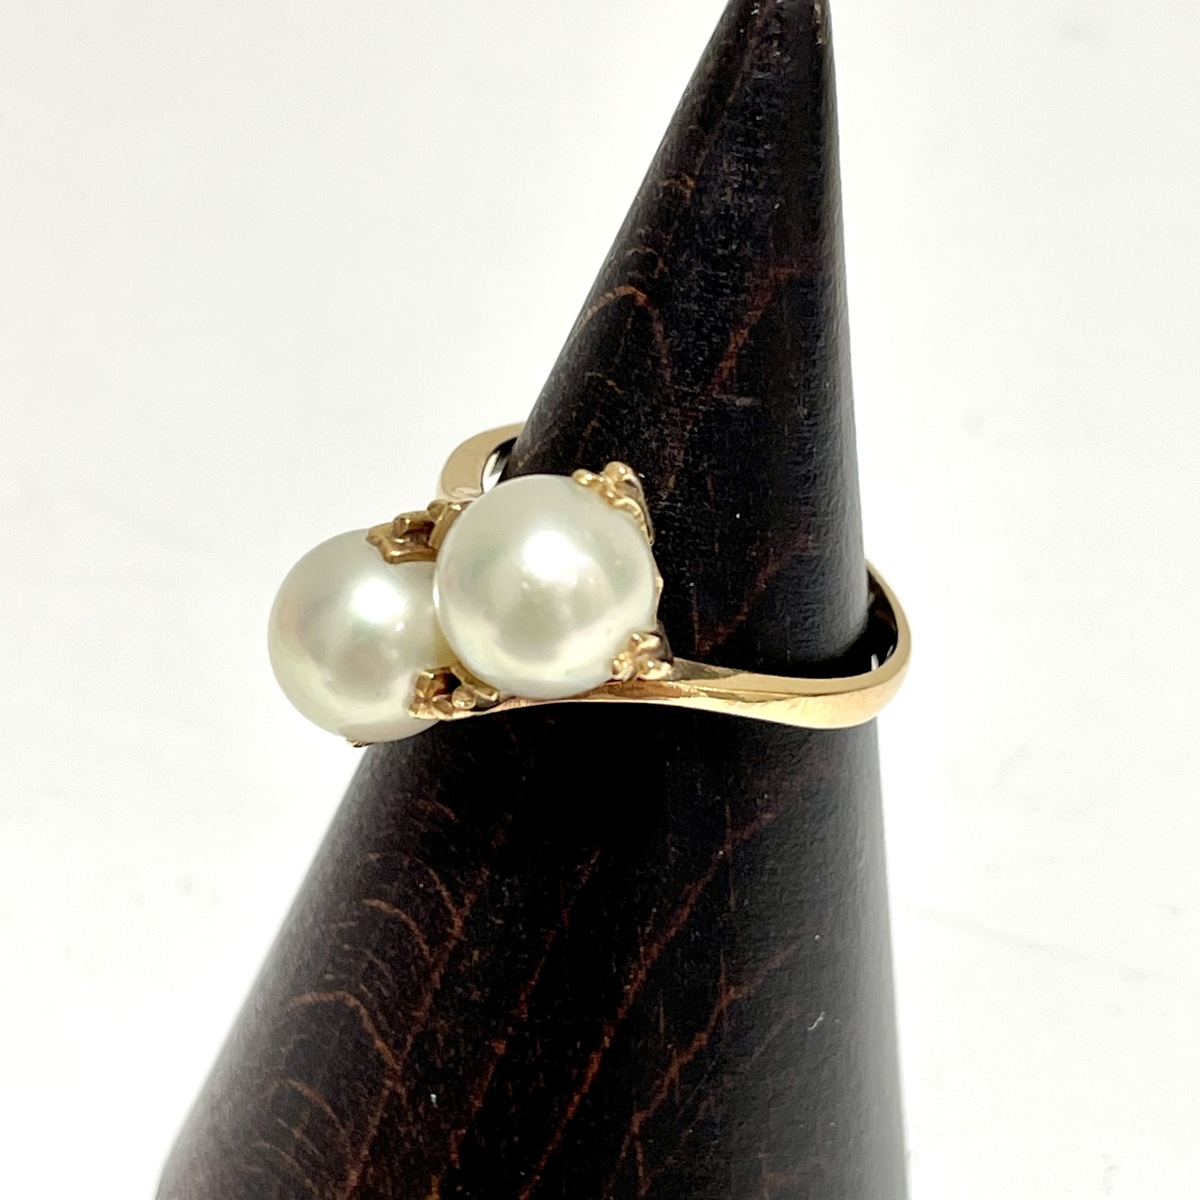 パール・真珠のK18YG 天然アコヤパール(7mm) リングの買取実績です。